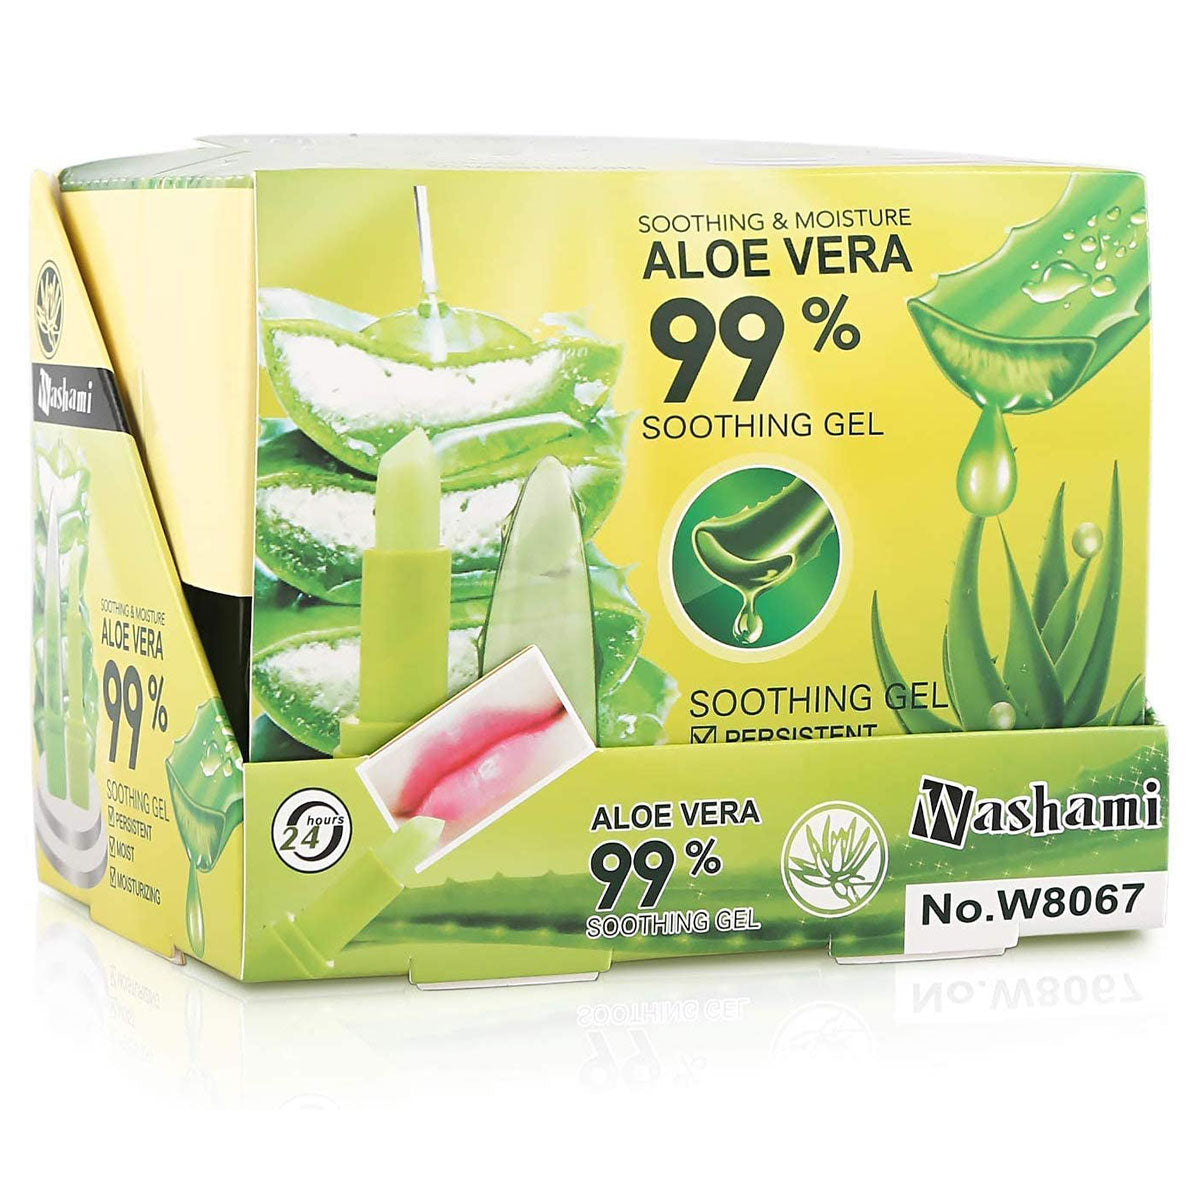 Washami Aloe Vera 99 Color Lipstick Value Pack of 2 